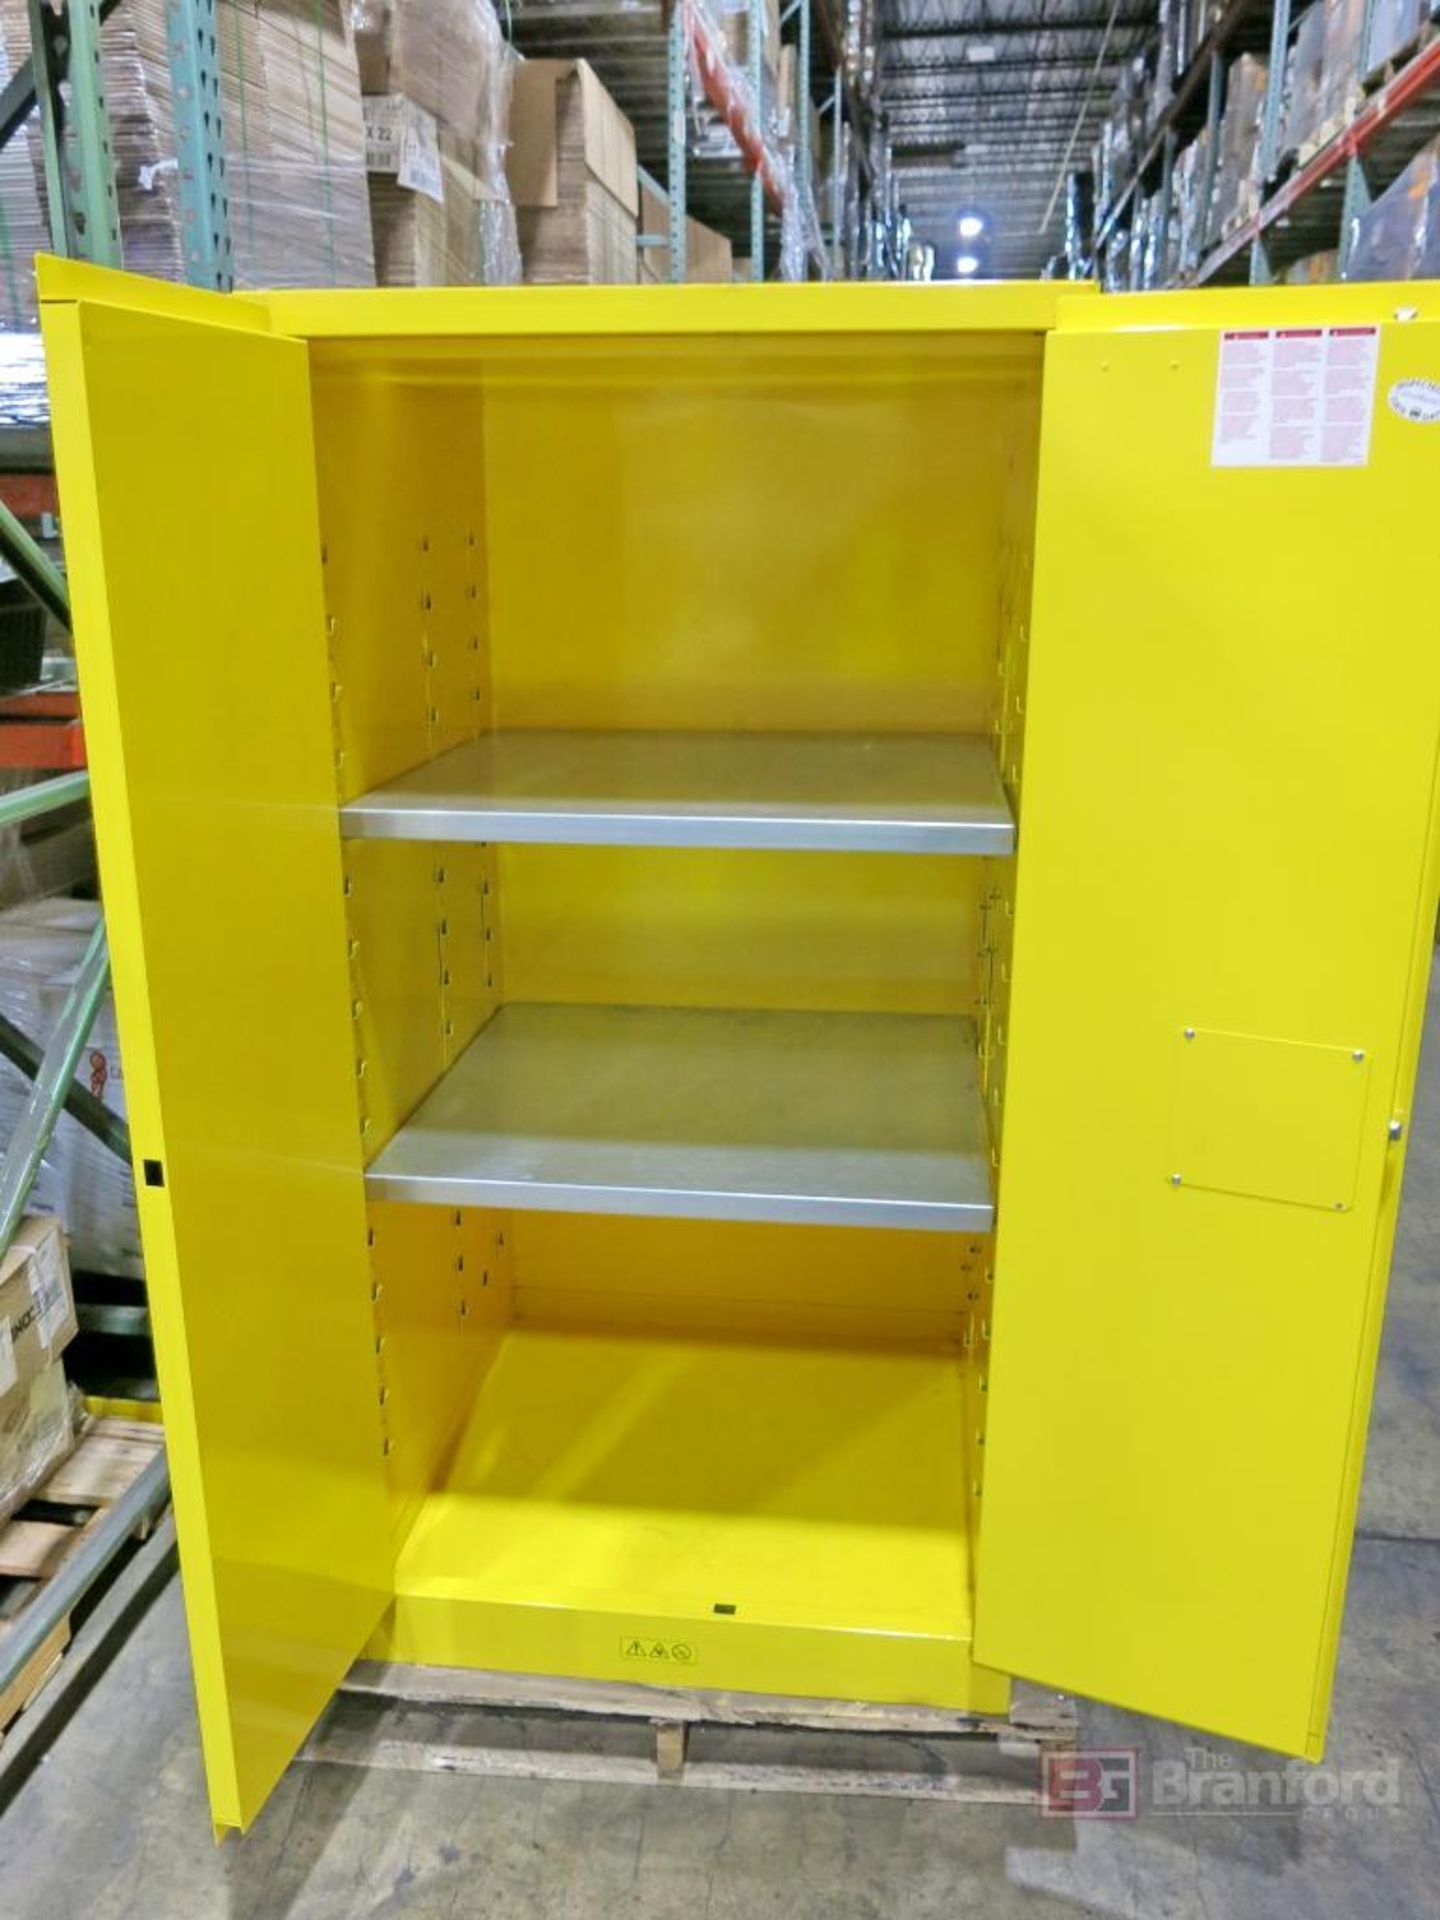 Justrite 2-Door Flammable Liquid Storage Cabinet - Image 2 of 3